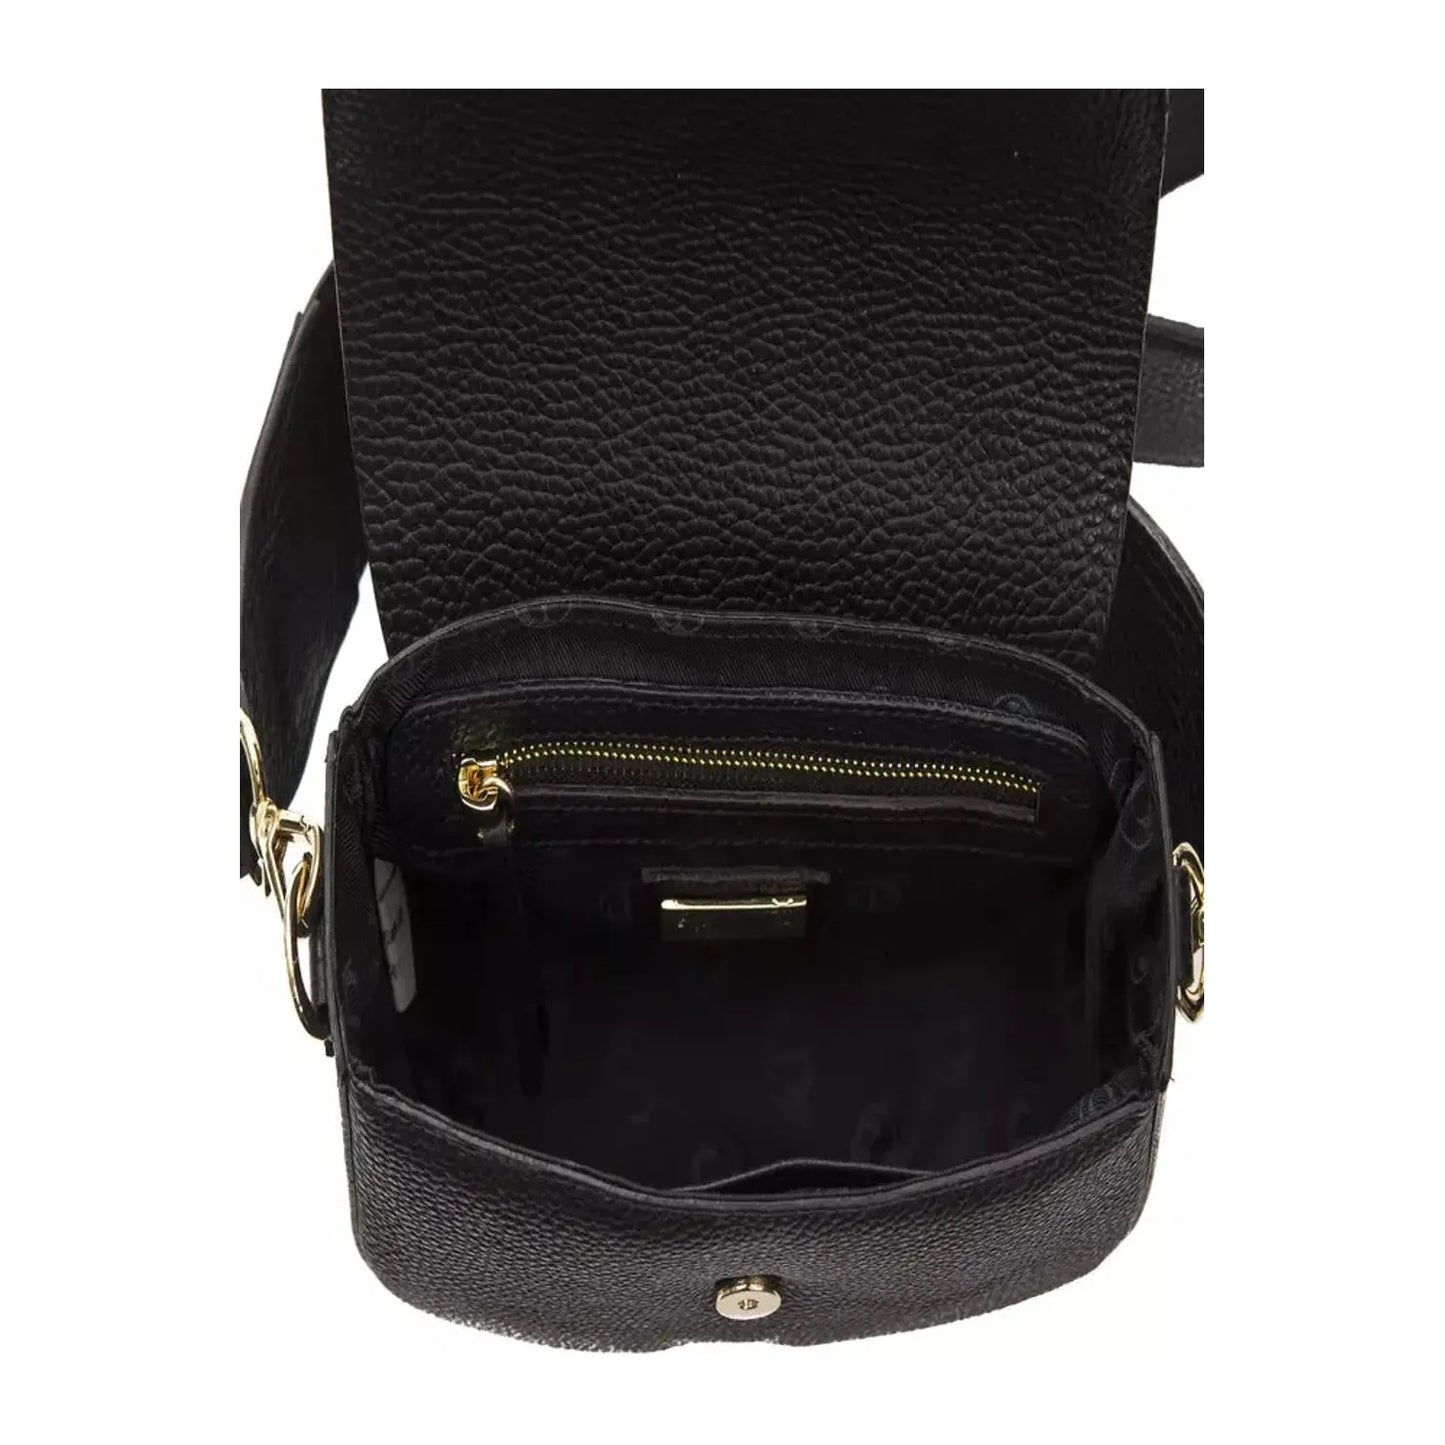 Pompei Donatella Elegant Black Leather Crossbody Bag black-leather-crossbody-bag-1 Crossbody Bag stock_product_image_5809_1171289846-23-bb1c3c3c-4f5.webp